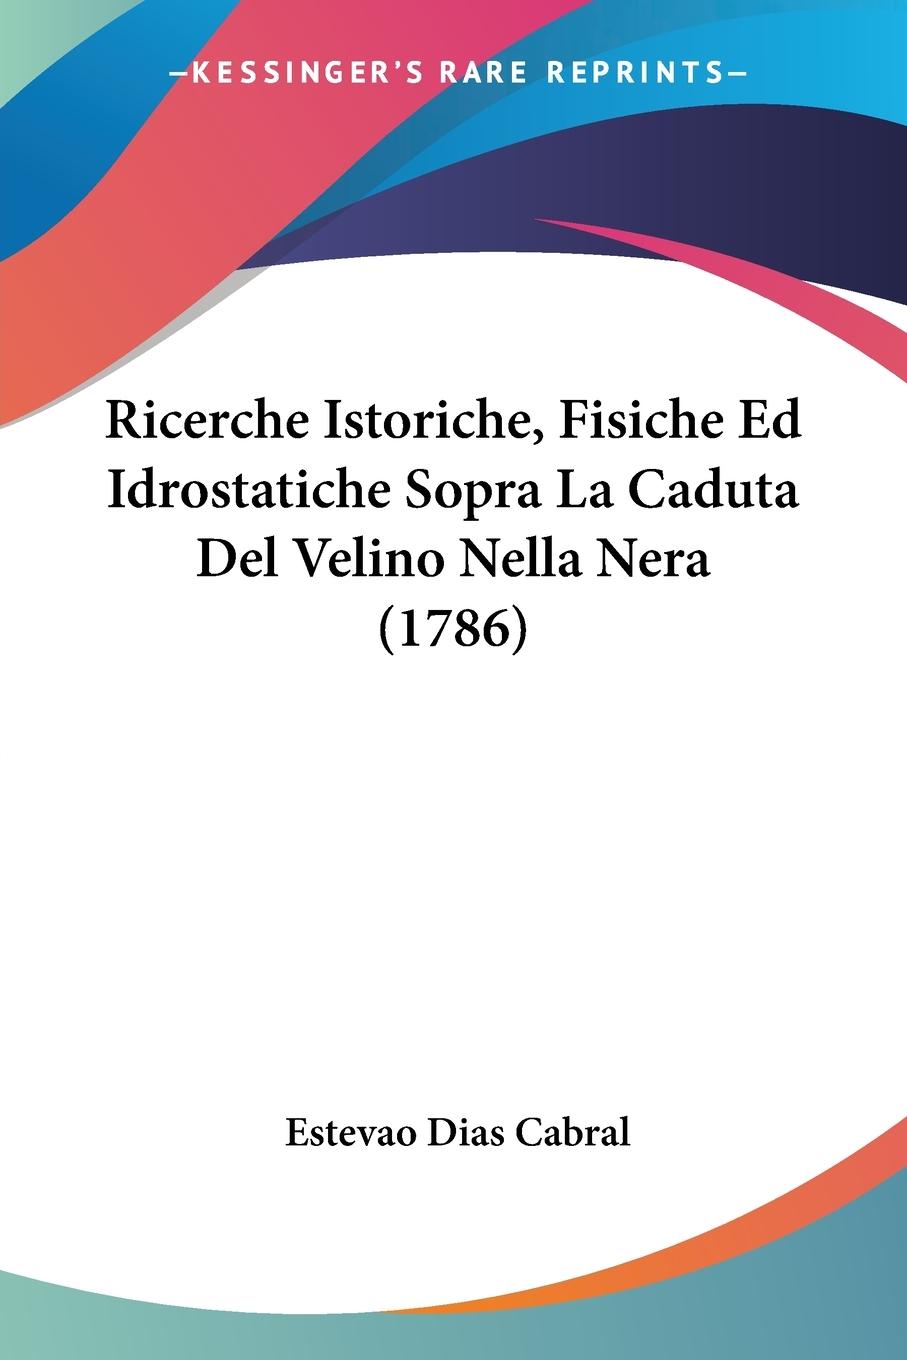 Ricerche Istoriche, Fisiche Ed Idrostatiche Sopra La Caduta Del Velino Nella Nera (1786) - Cabral, Estevao Dias